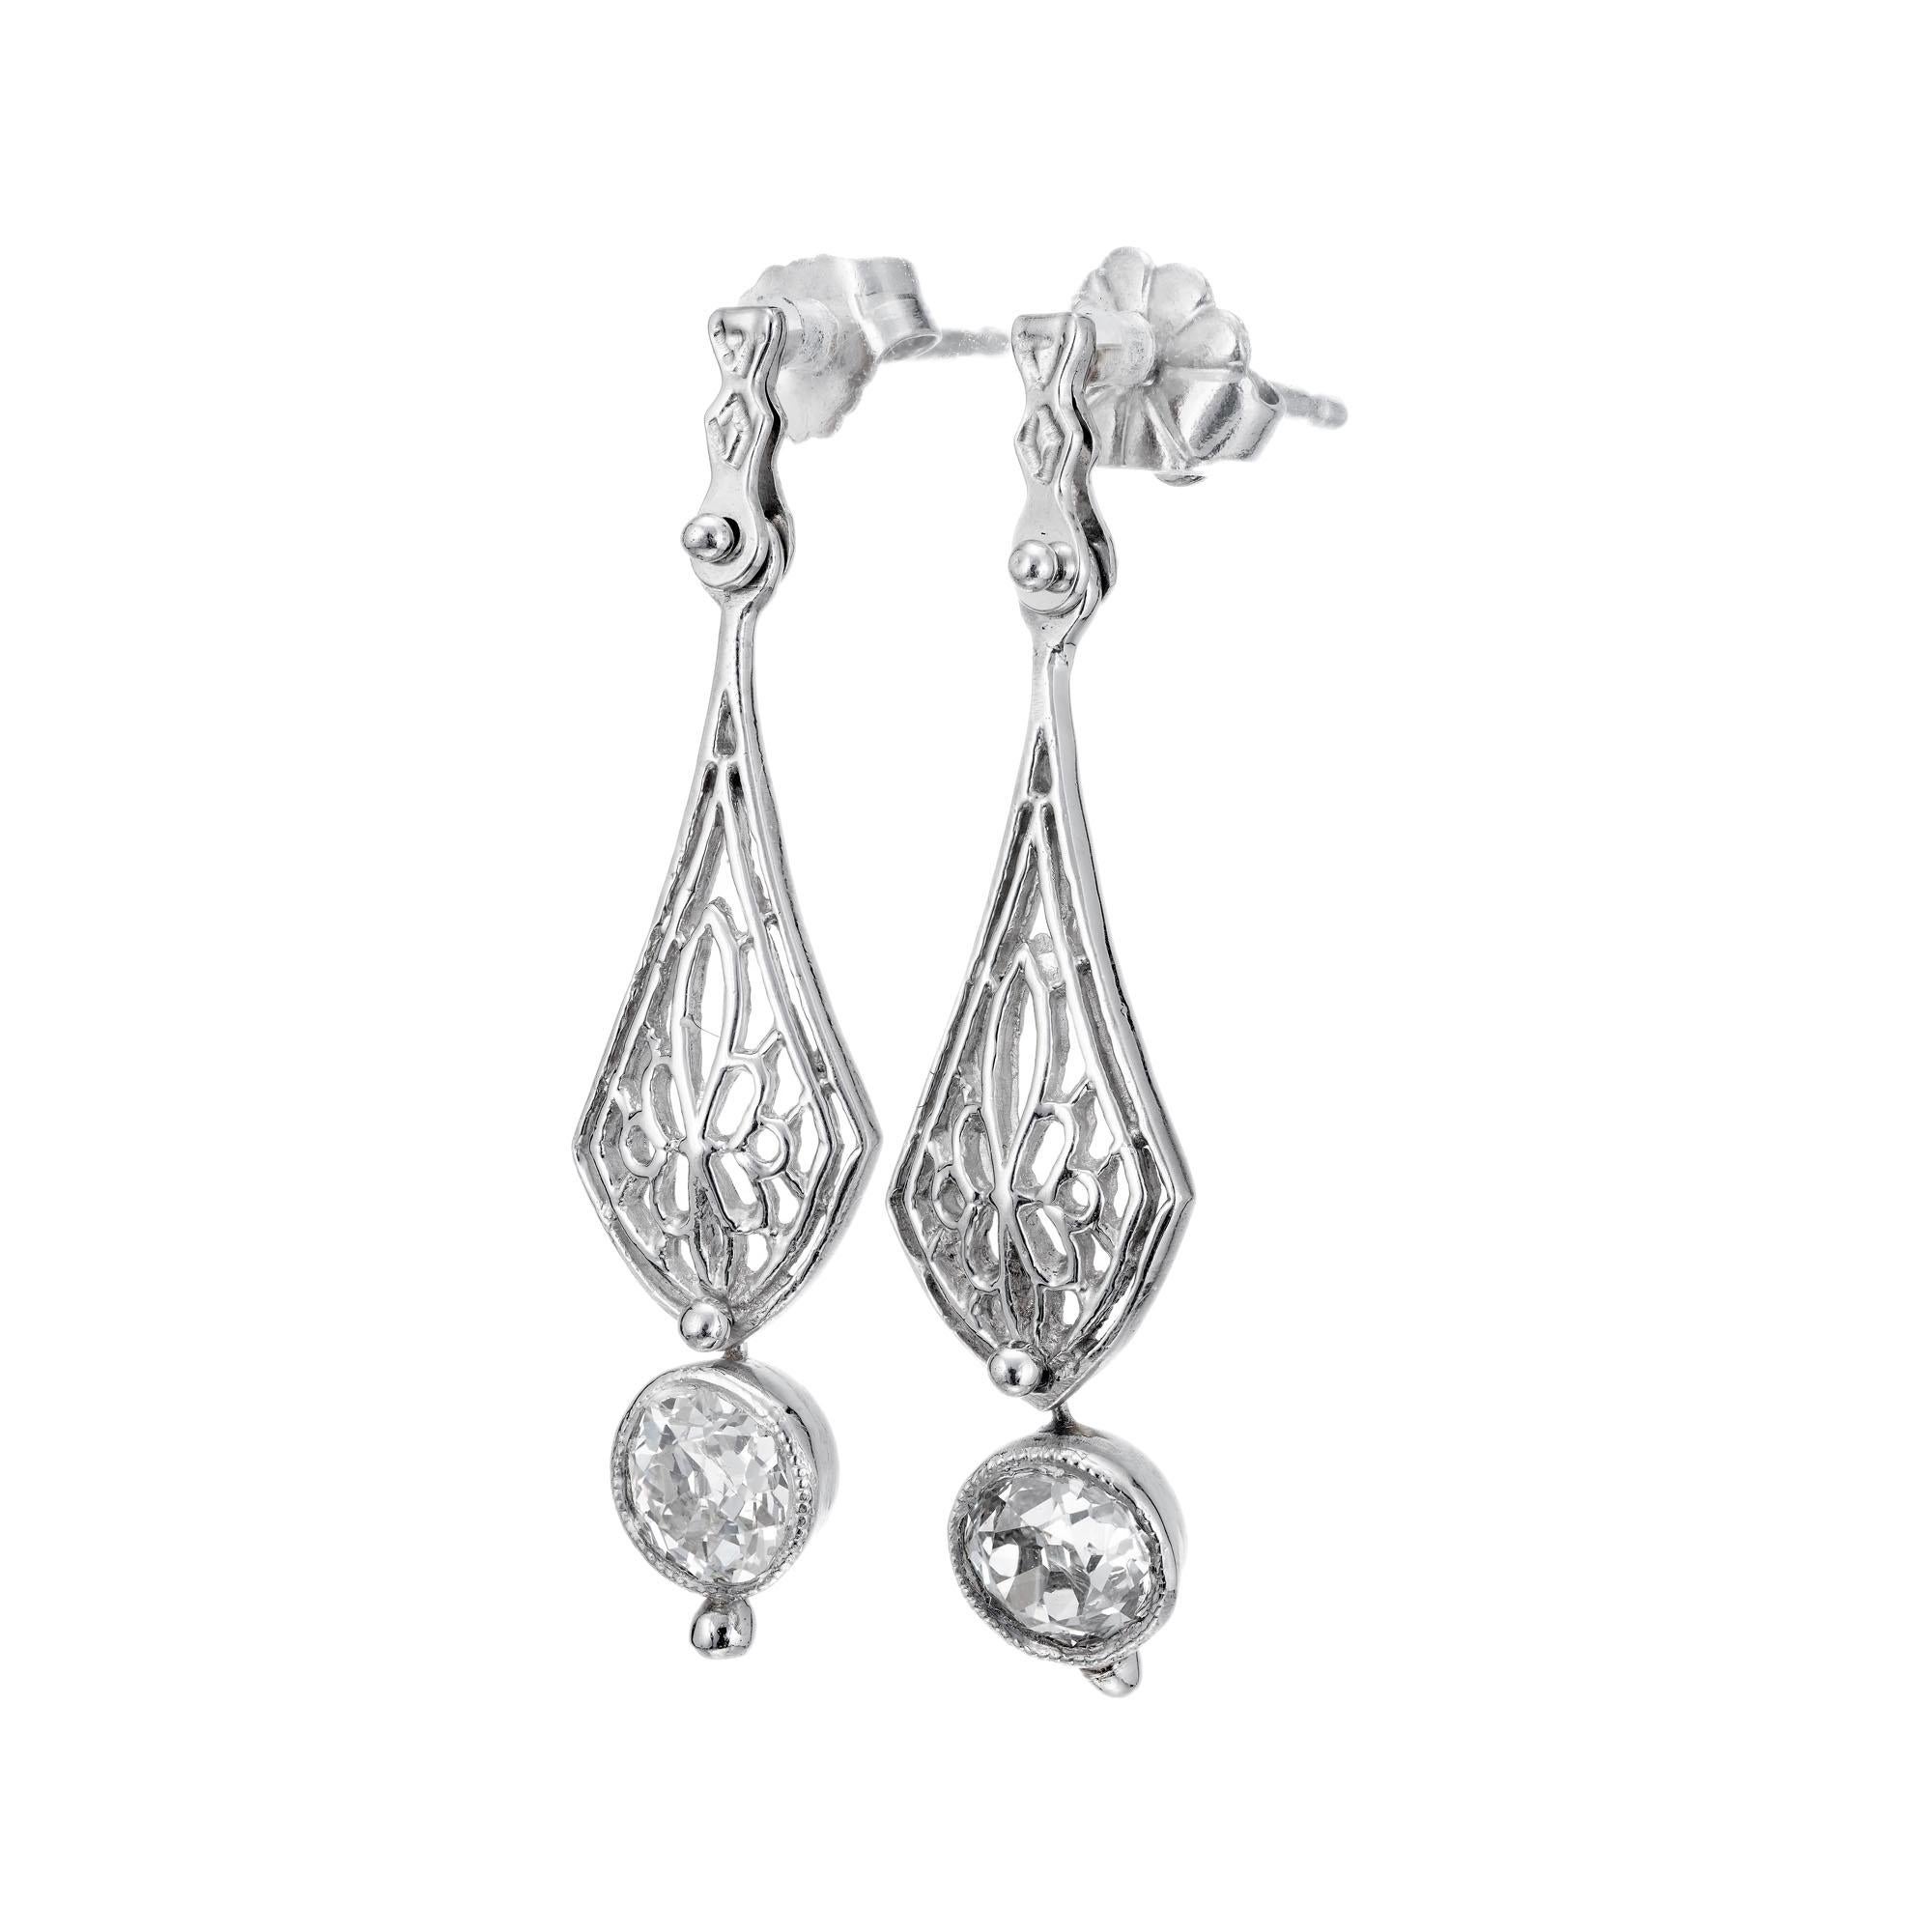 Edwardian Stil Platin Art Deco handgefertigt 1910-1920 Diamant Ohrringe baumeln.  Zwei Diamanten im alten europäischen Schliff baumeln am unteren Mittelteil.  Bewegt sich von Seite zu Seite auf einer Niete aus dem oberen Bereich.  

2 alte